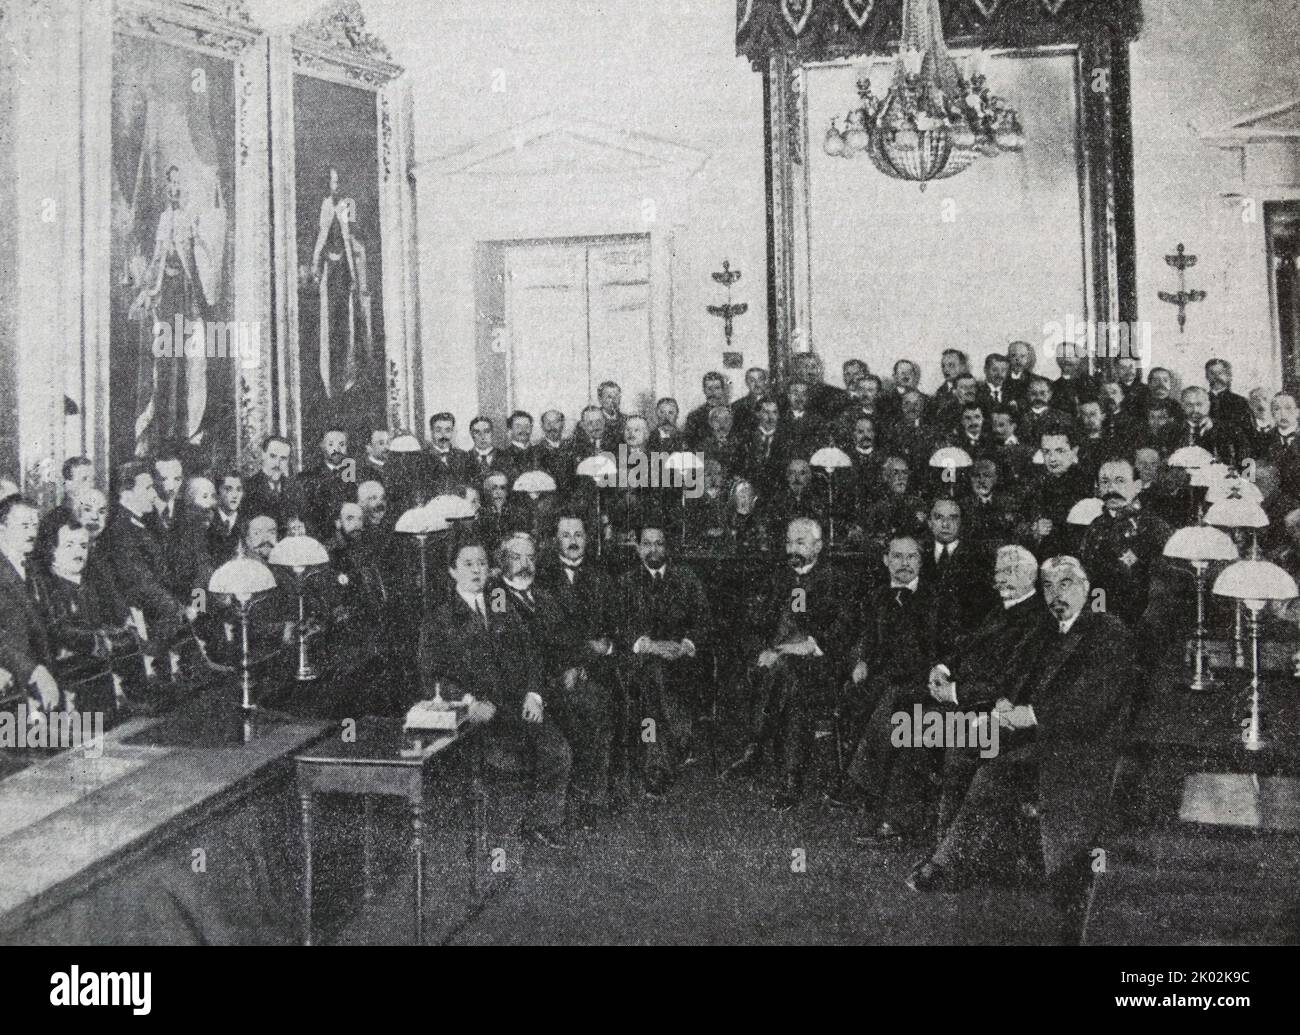 Il governo provvisorio della Russia 1917. (Seduto da sinistra a destra): A.I. Konovalov, A.I. Guchkov, N.V. Nekrasov, A.I. Shingarev, G.E. Lvov, I.V. Godnev, M.I. Tereshchenko, P.N. Miliukov, A.A. Manuylov. Worth, A.F. Kerensky Foto Stock